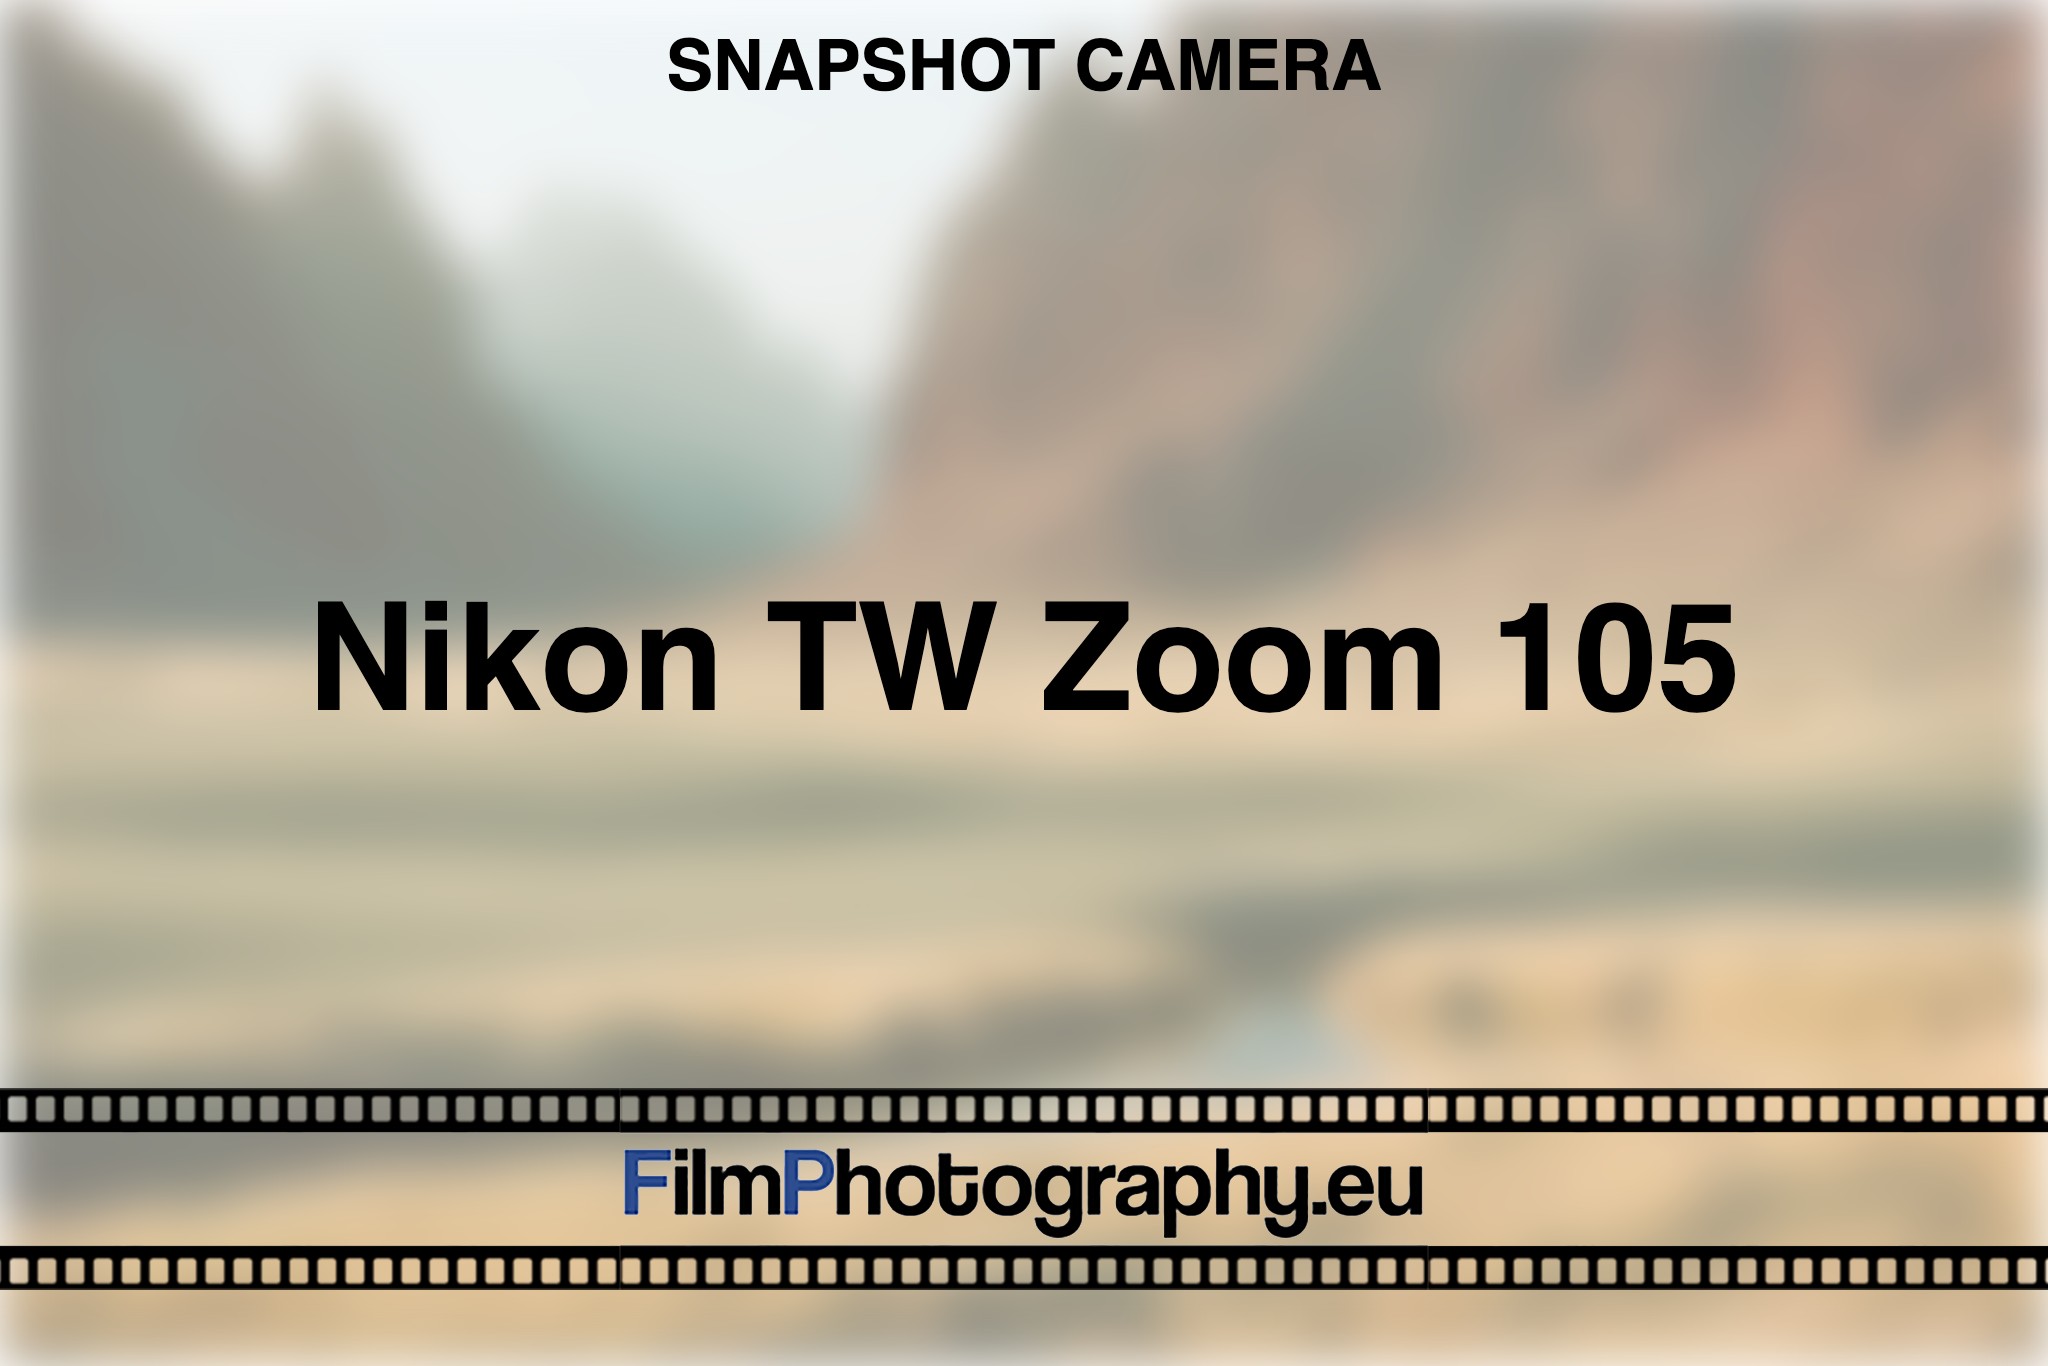 nikon-tw-zoom-105-snapshot-camera-bnv